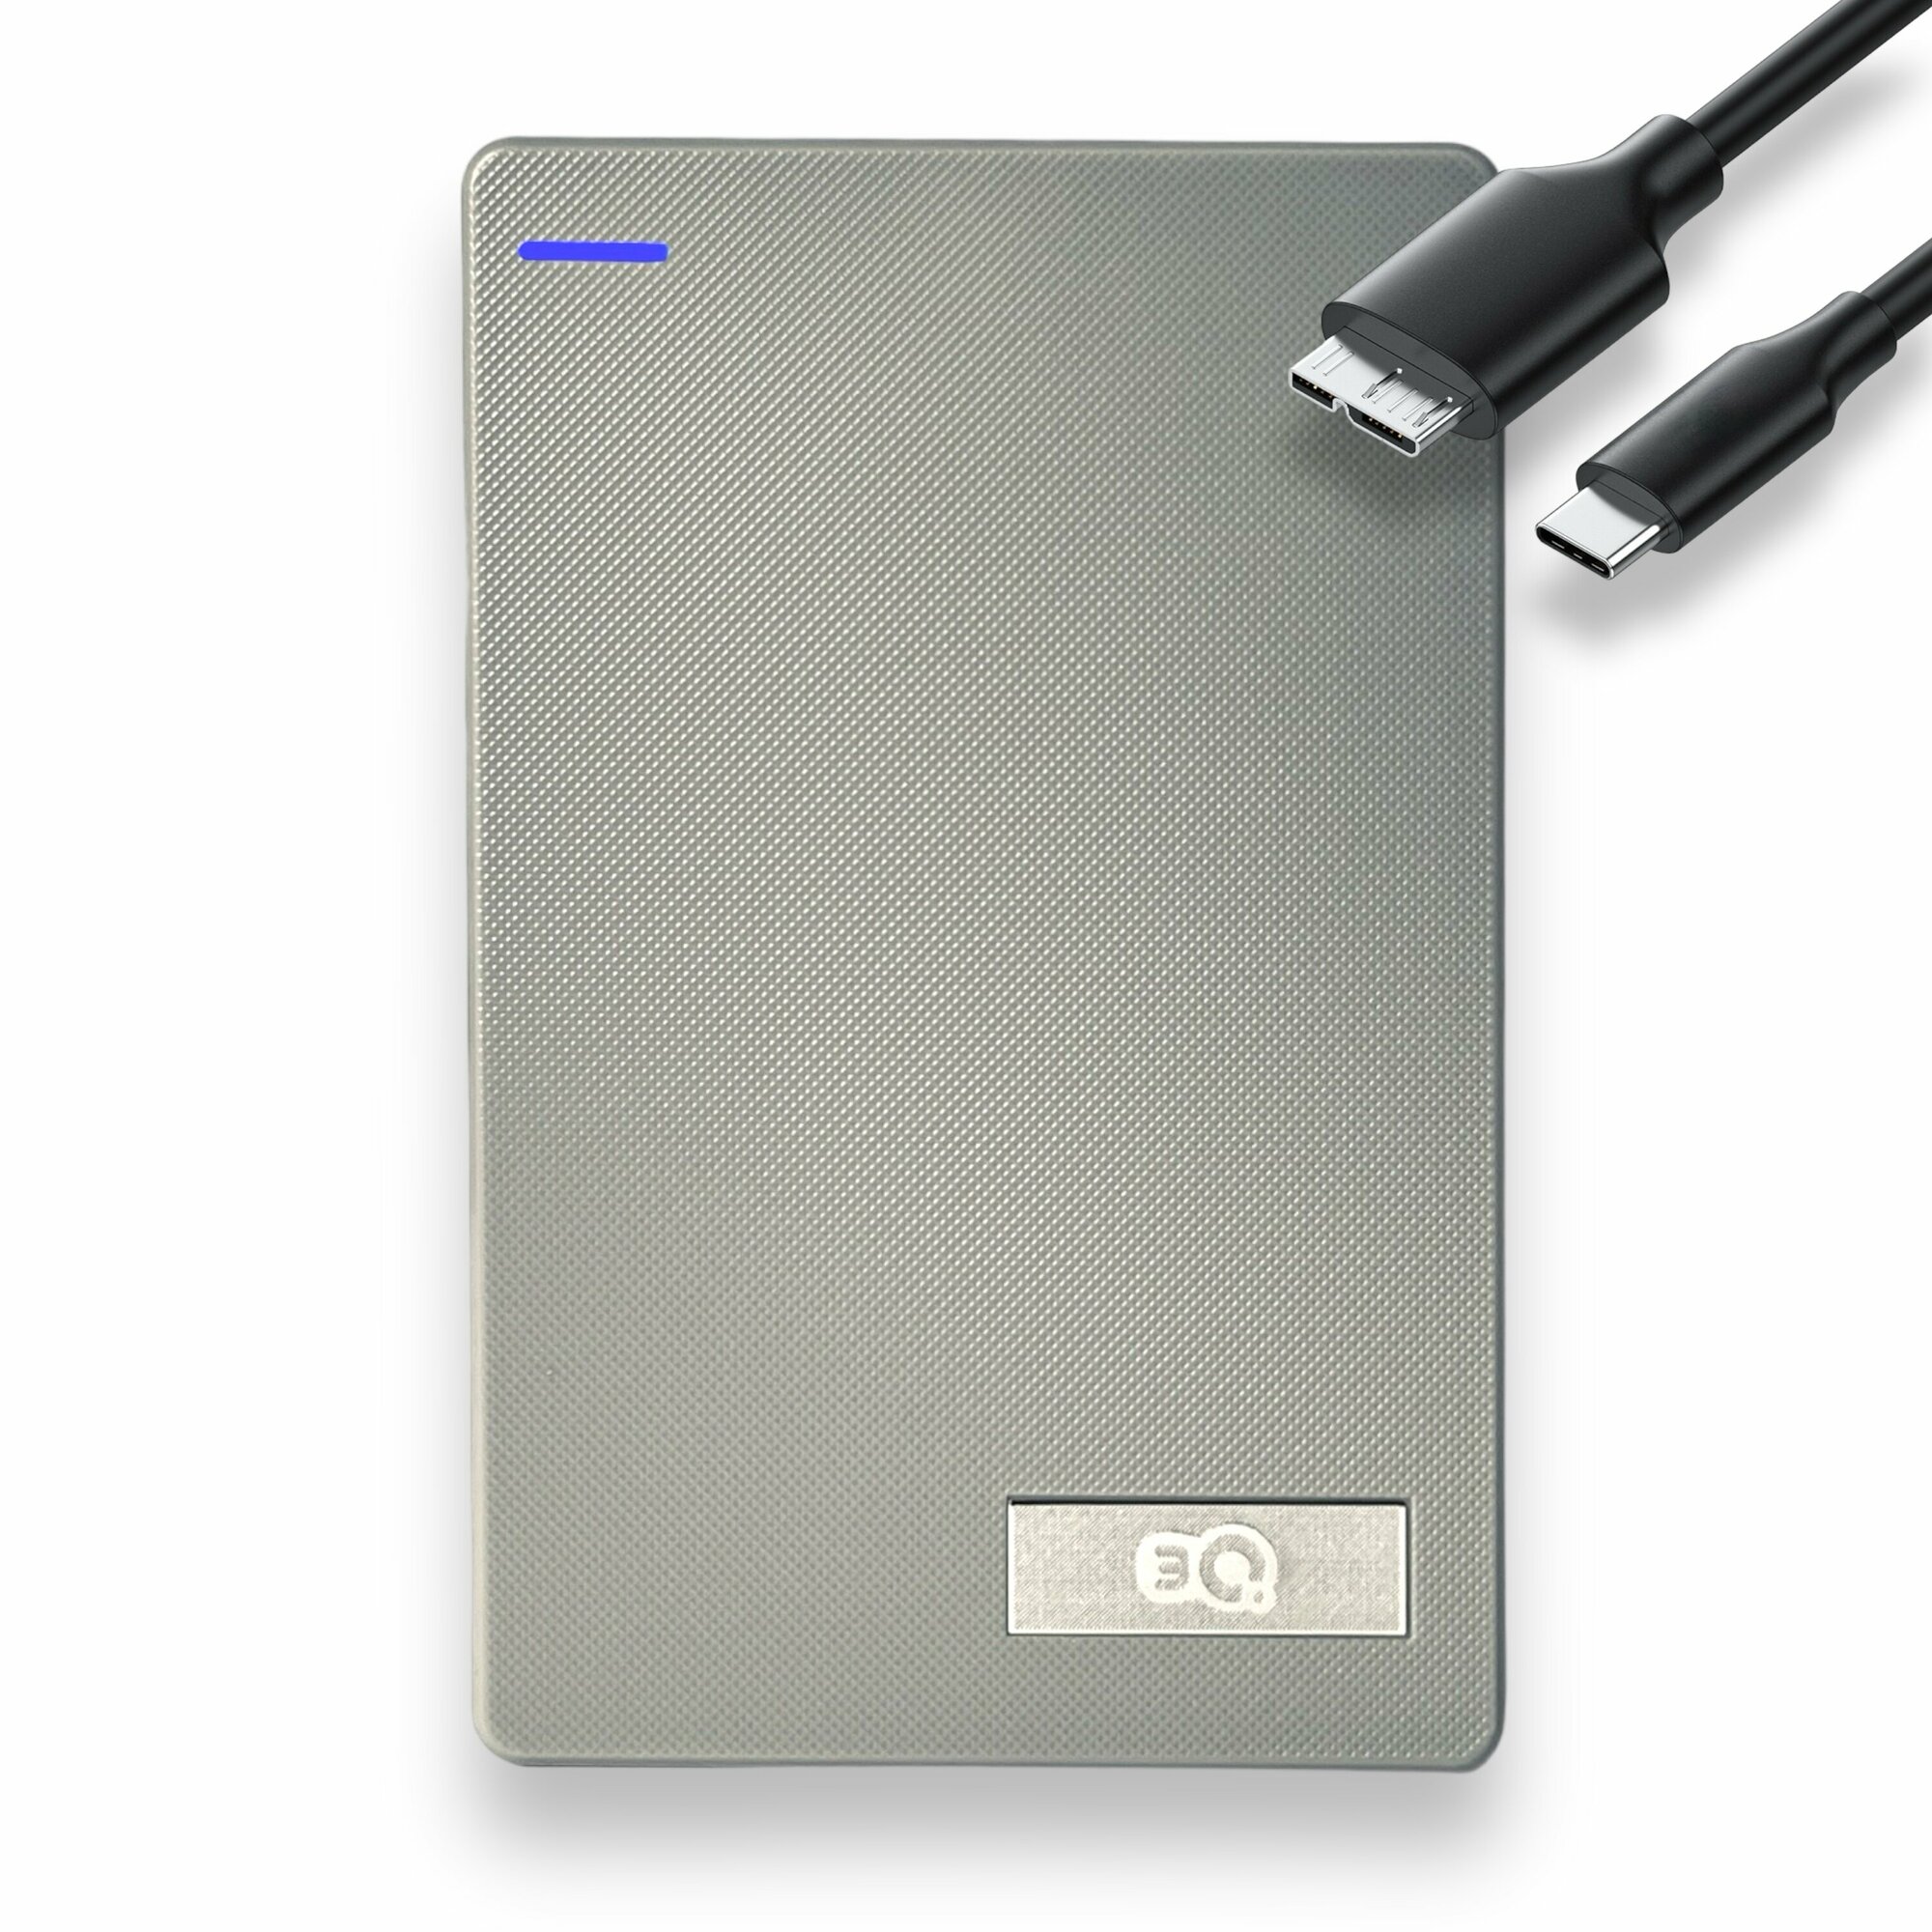 Внешний жесткий диск 500 GB 3Q Portable USB Type-C, Портативный накопитель HDD, серый